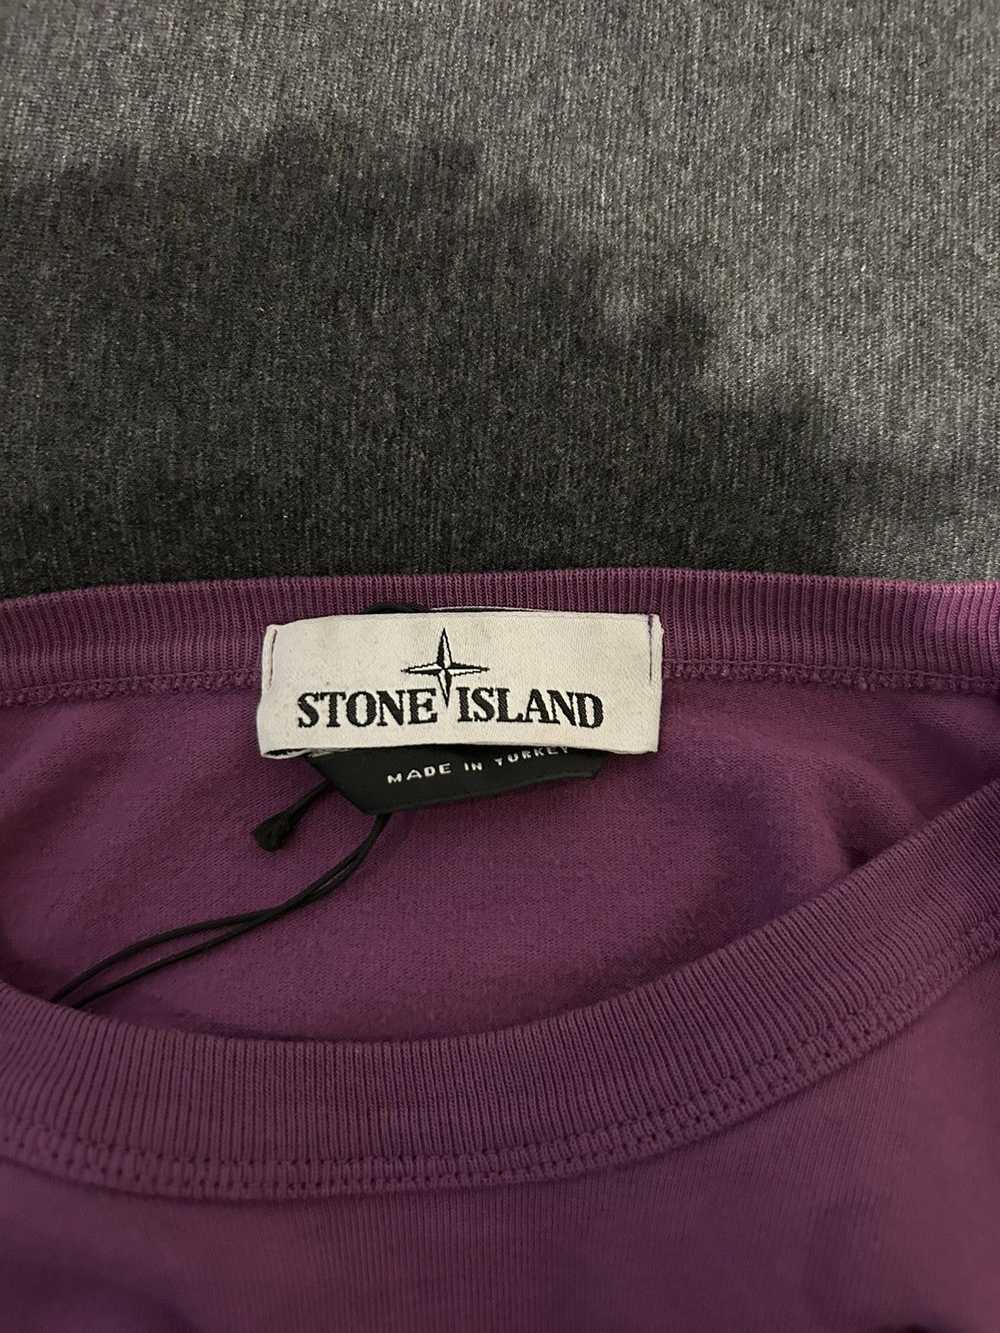 Stone Island Stone Island Long Sleeve - image 4